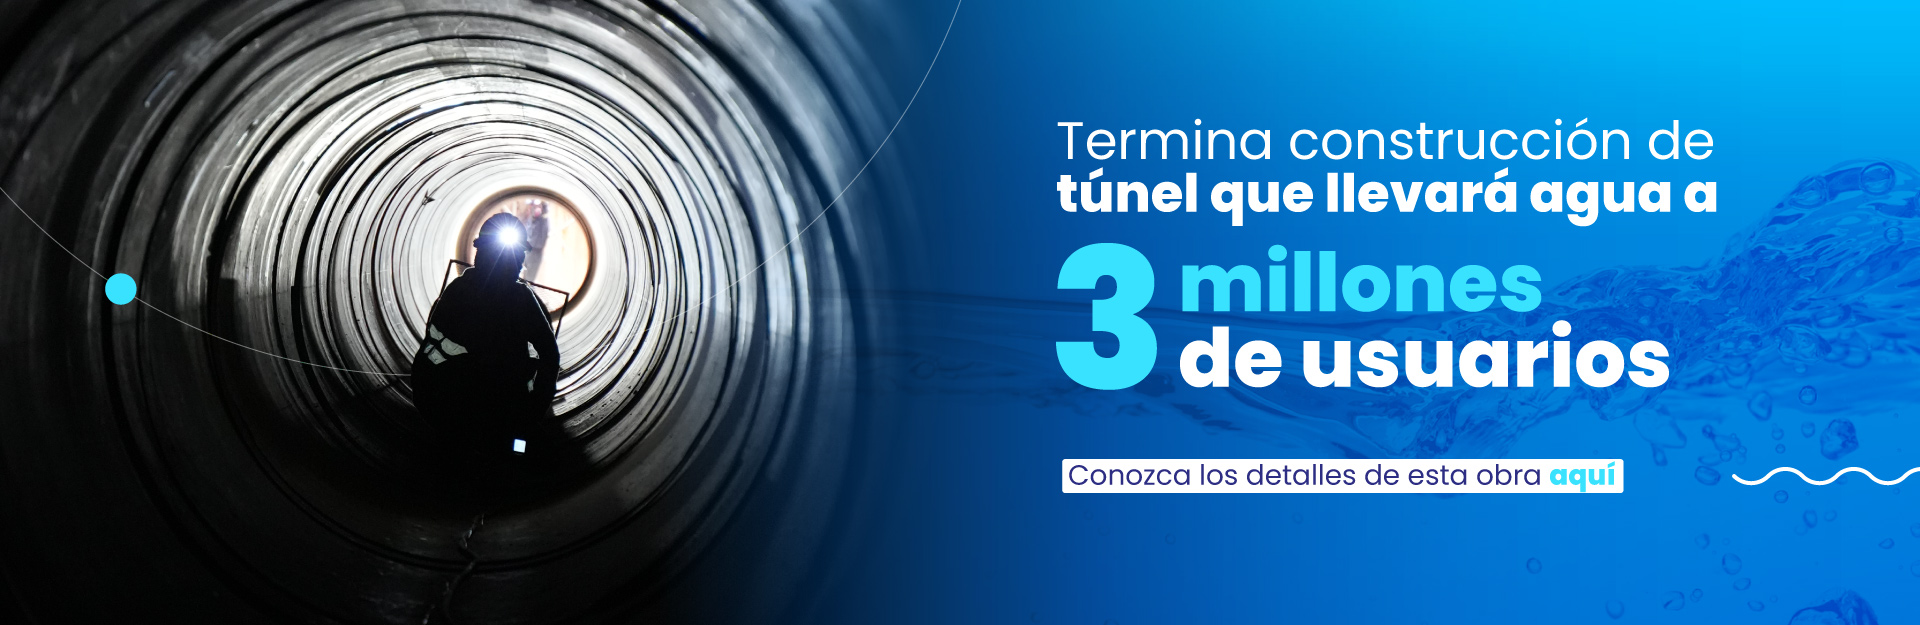 Termina construcción del túnel que llevará agua a tres millones de usuarios